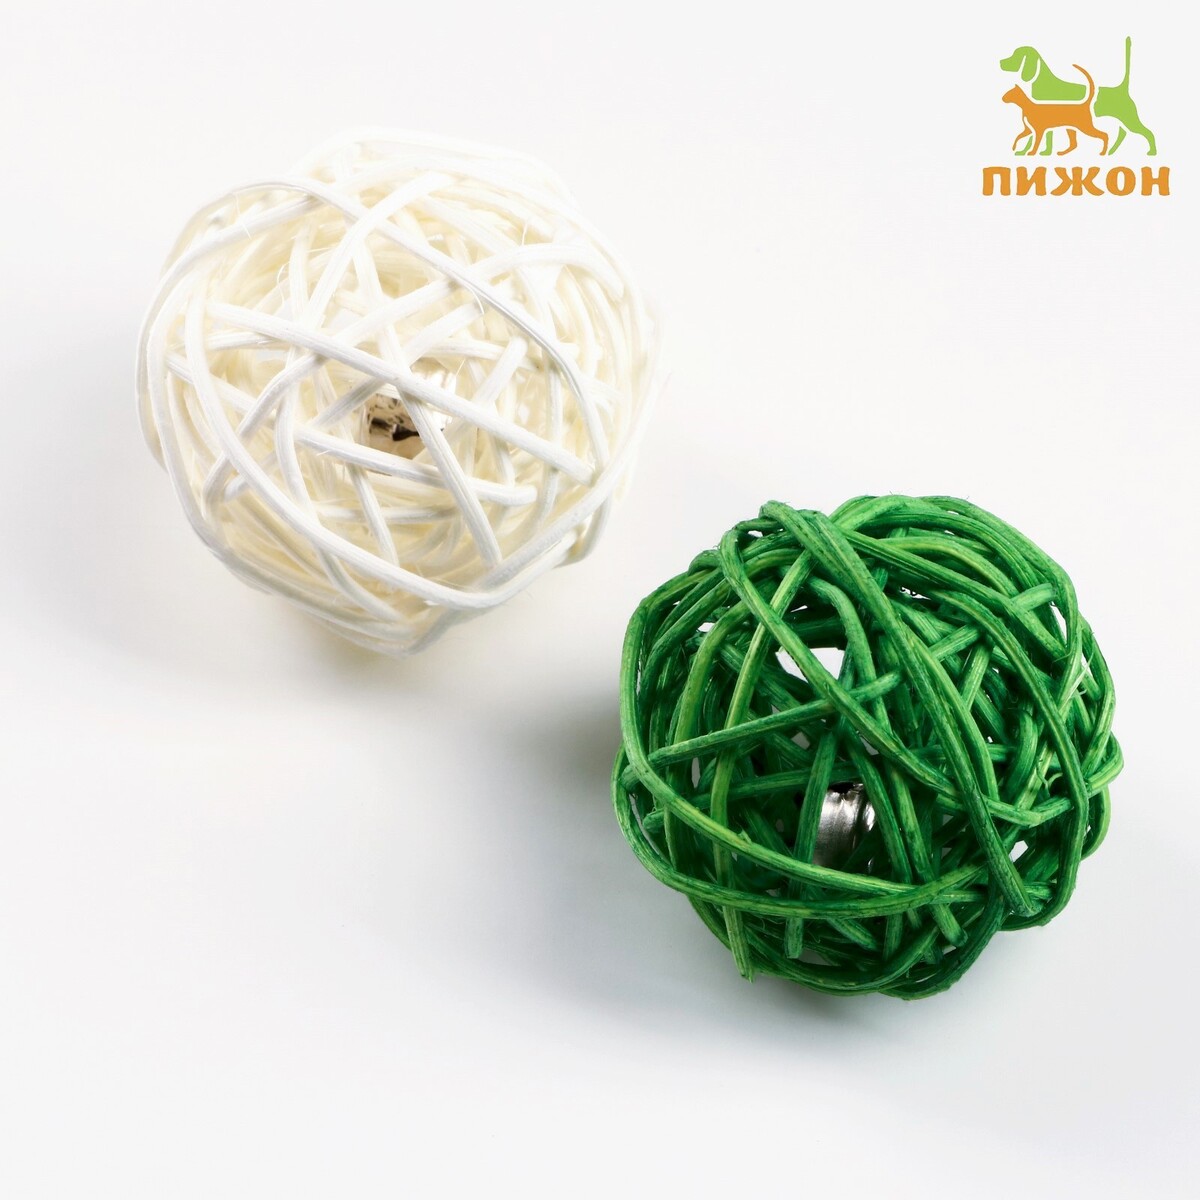 Набор из 2 плетеных шариков из лозы с бубенчиком, 5 см, белый/зеленый набор корзин плетеных розовых бамбук 3 шт